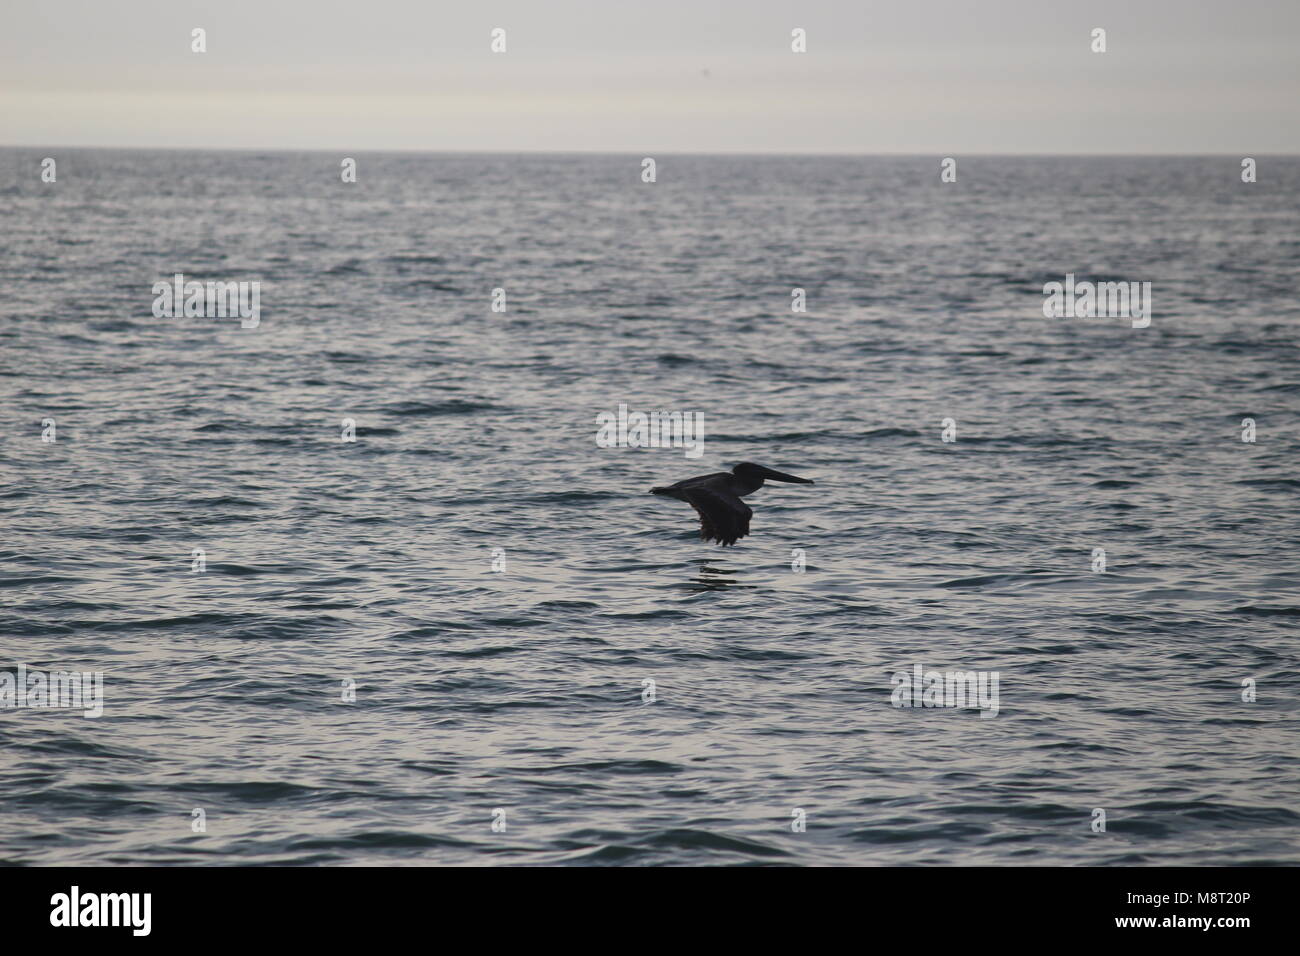 Pelican flying over the ocean Stock Photo